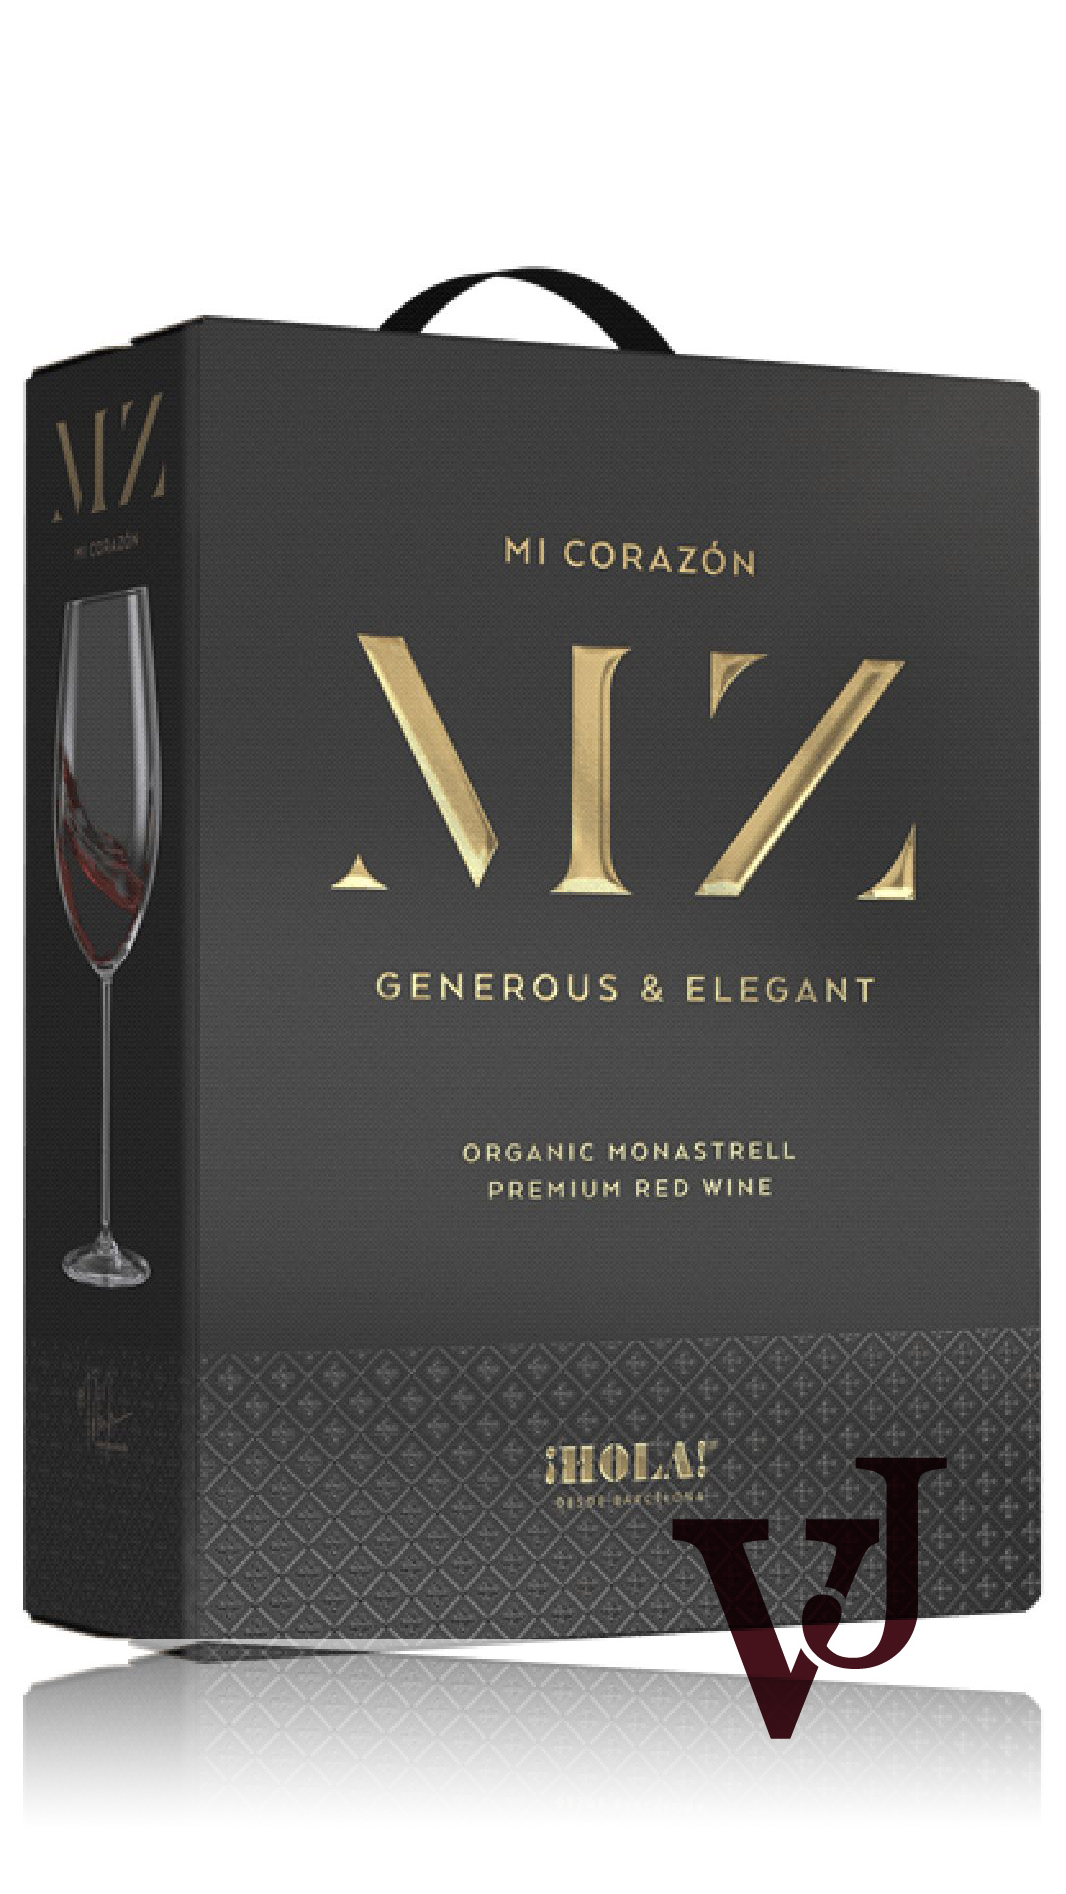 Rött vin - Hola MZ Mi Corazón by Måns Zelmerlöw 2022 artikel nummer 7280308 från producenten Barcelona Brands S.L från Spanien.